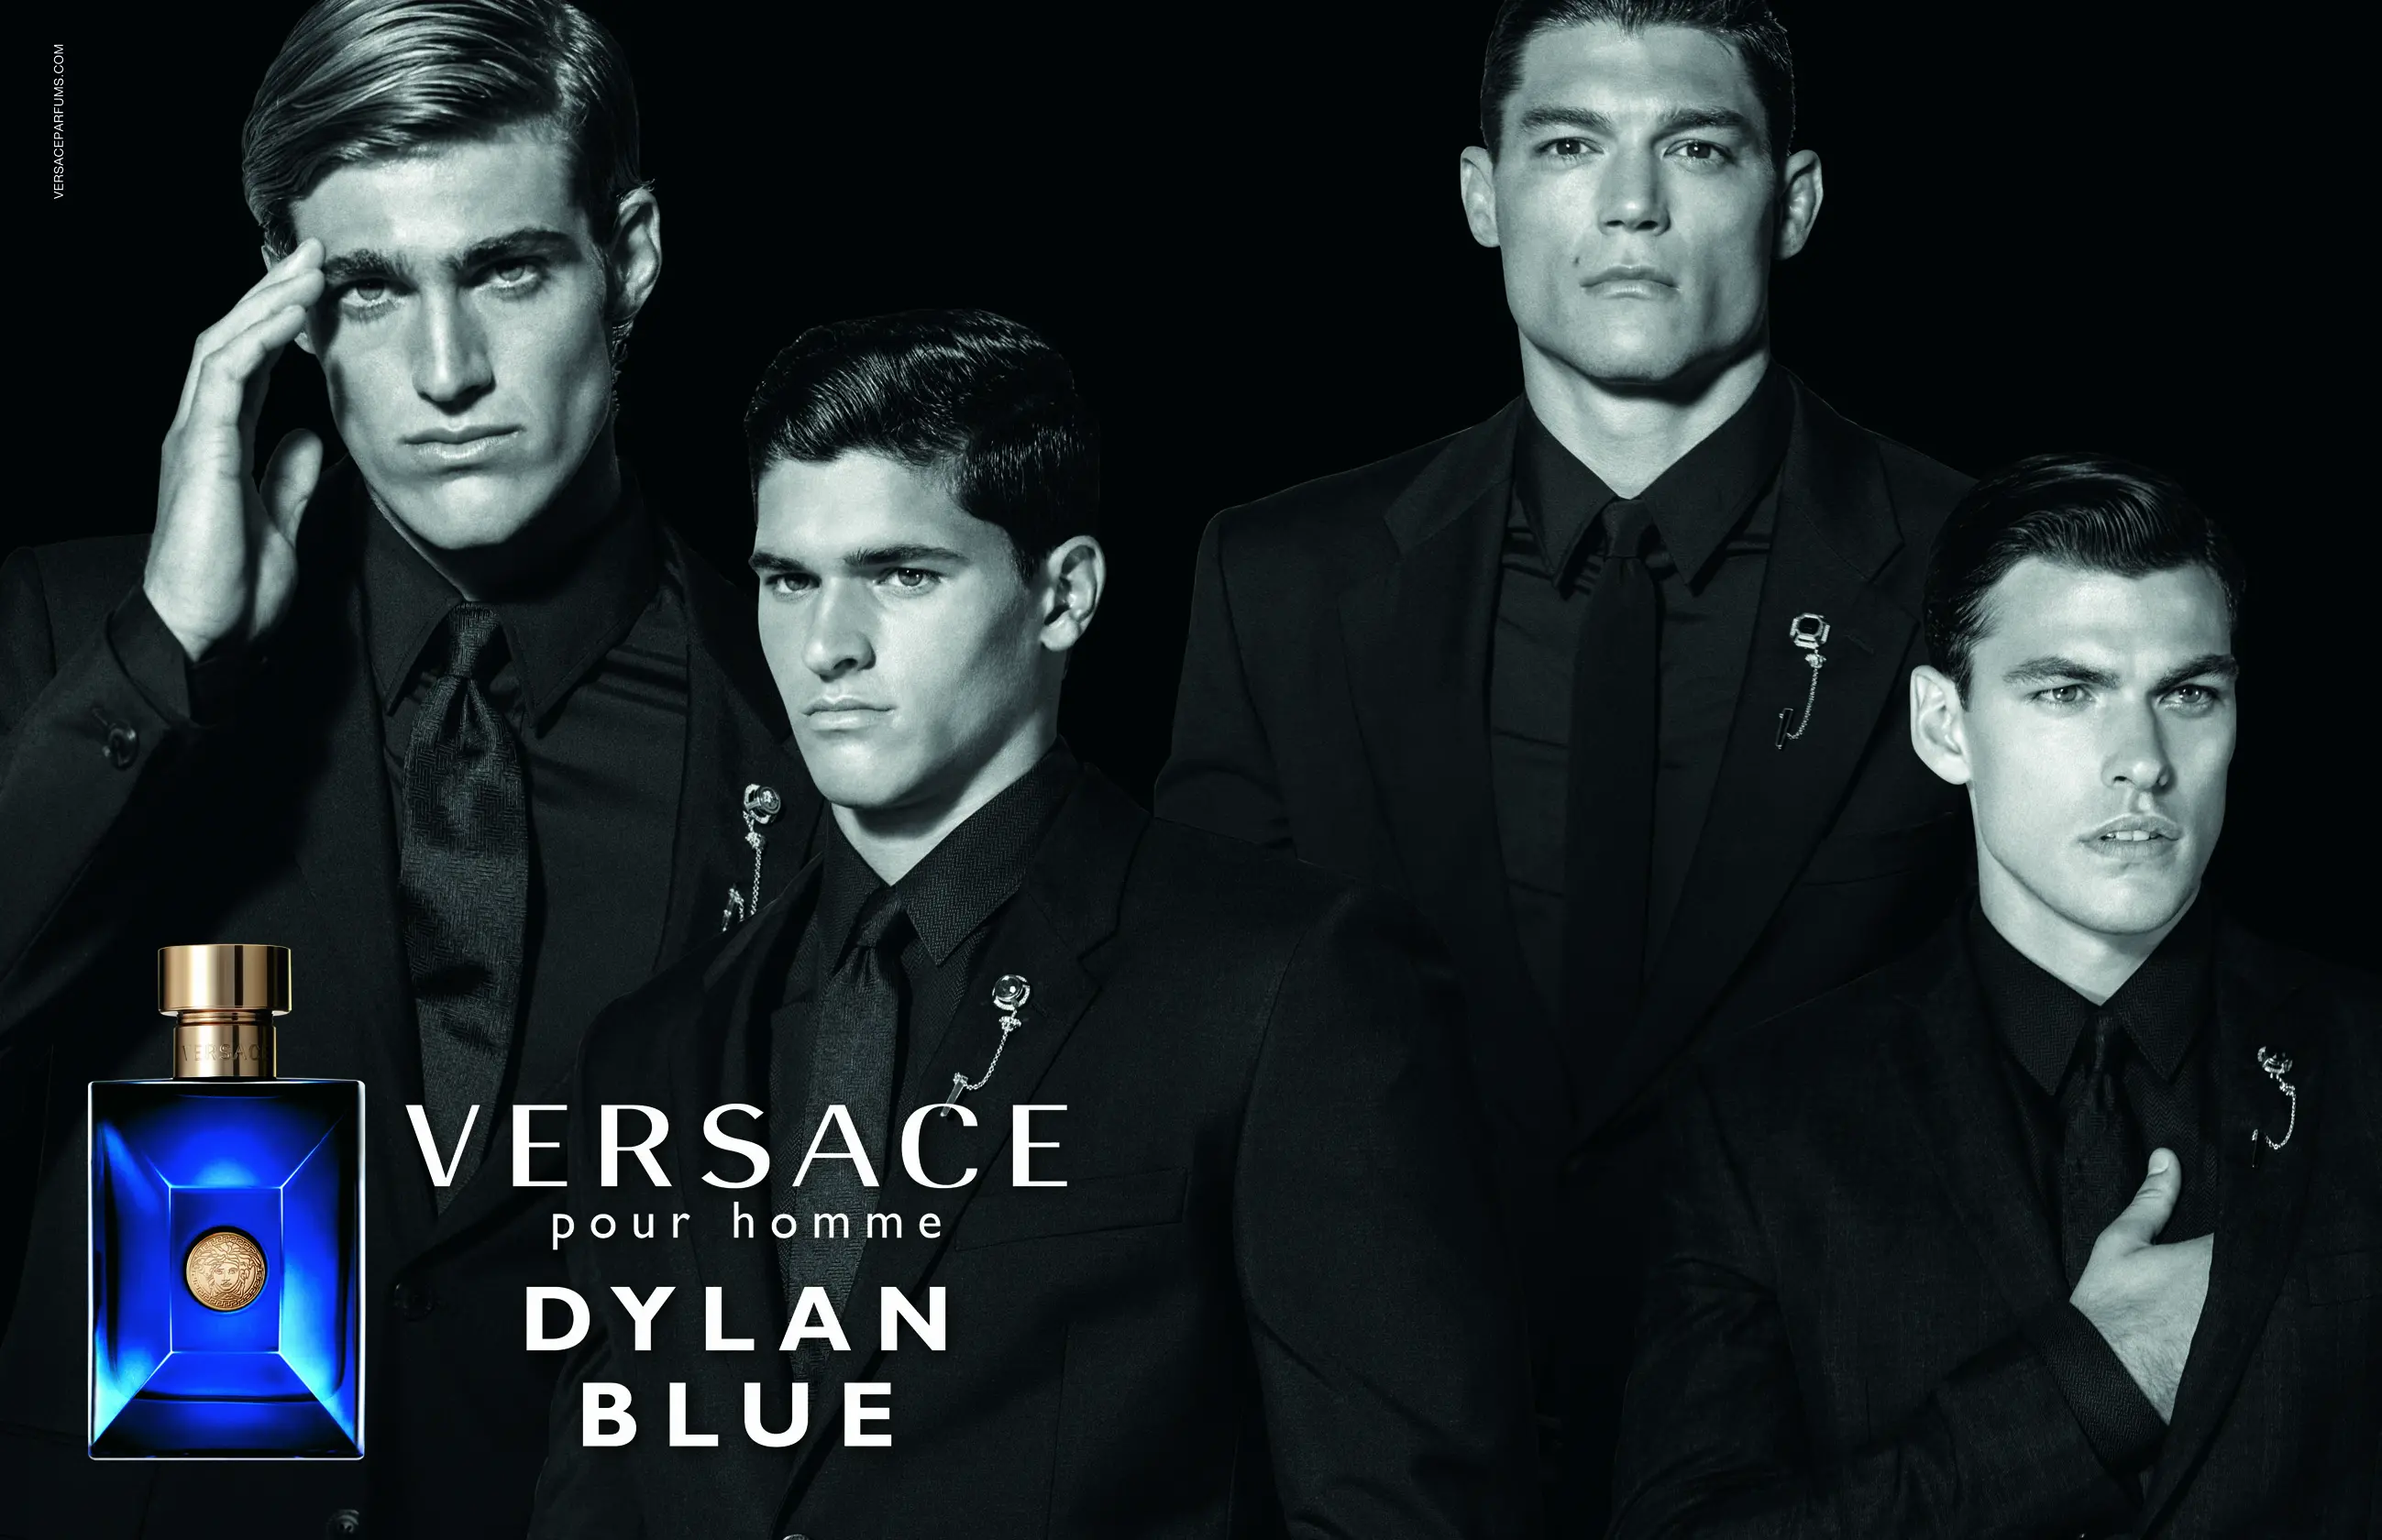 Dylan blue мужские. Versace мужские Dylan Blue реклама. Версаче Дилан Блю мужской. Versace pour homme реклама. Versace Dylan Blue реклама.